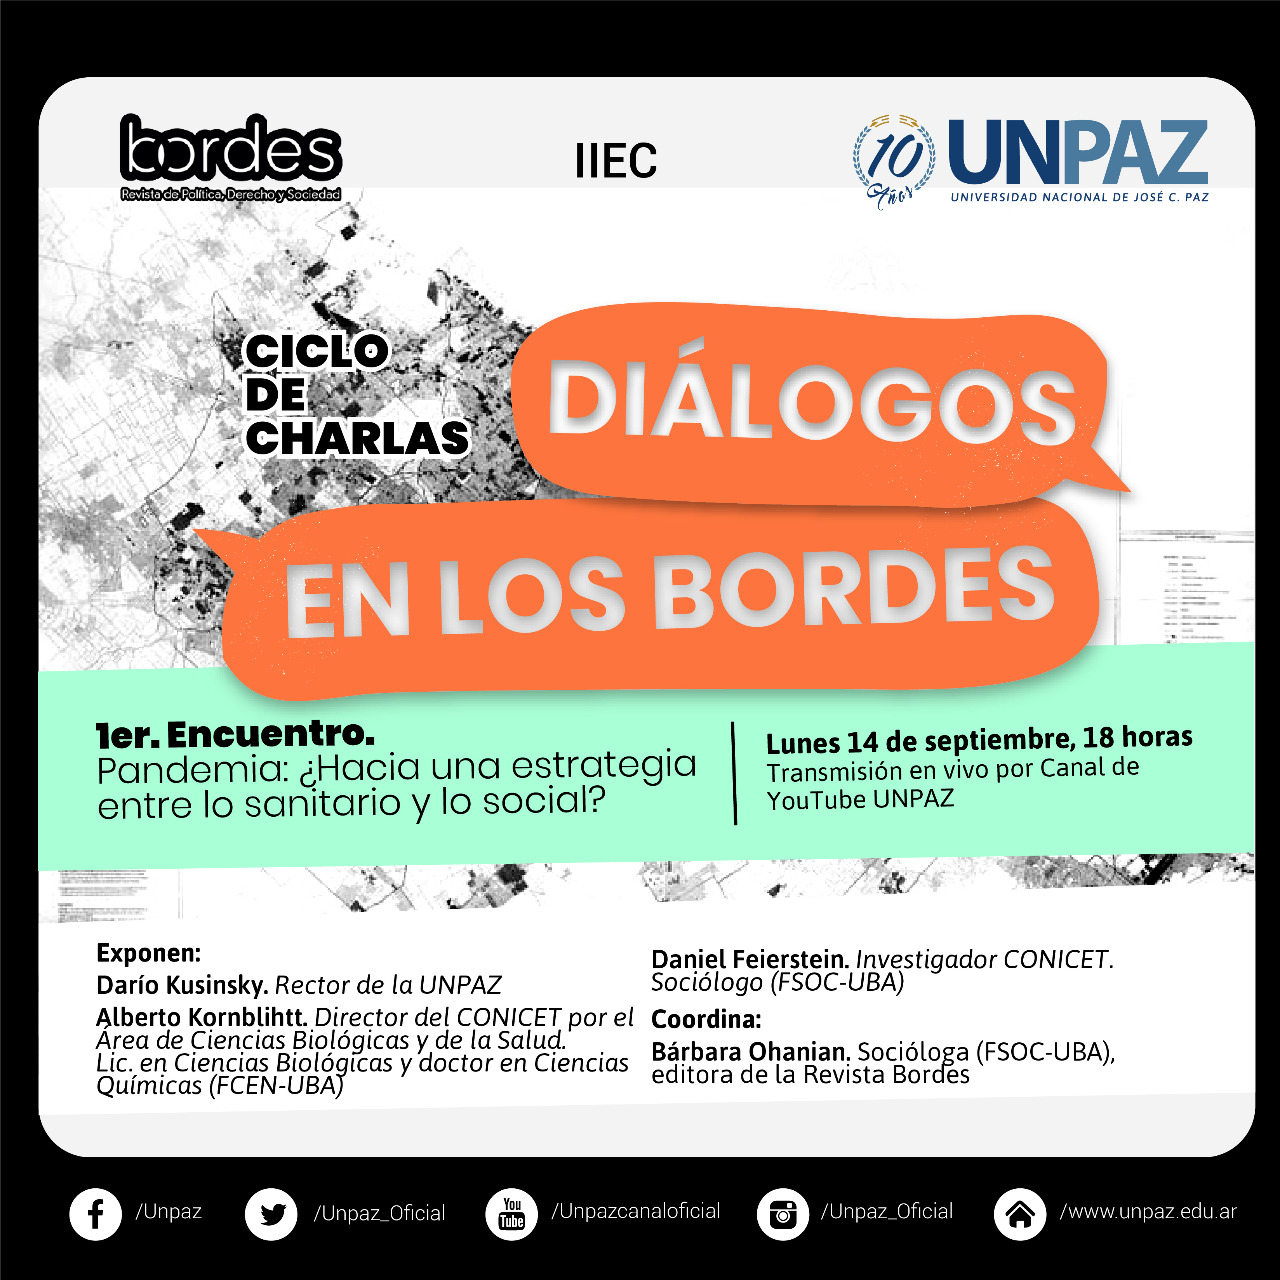 Ciclo de charlas “Diálogos en los Bordes”